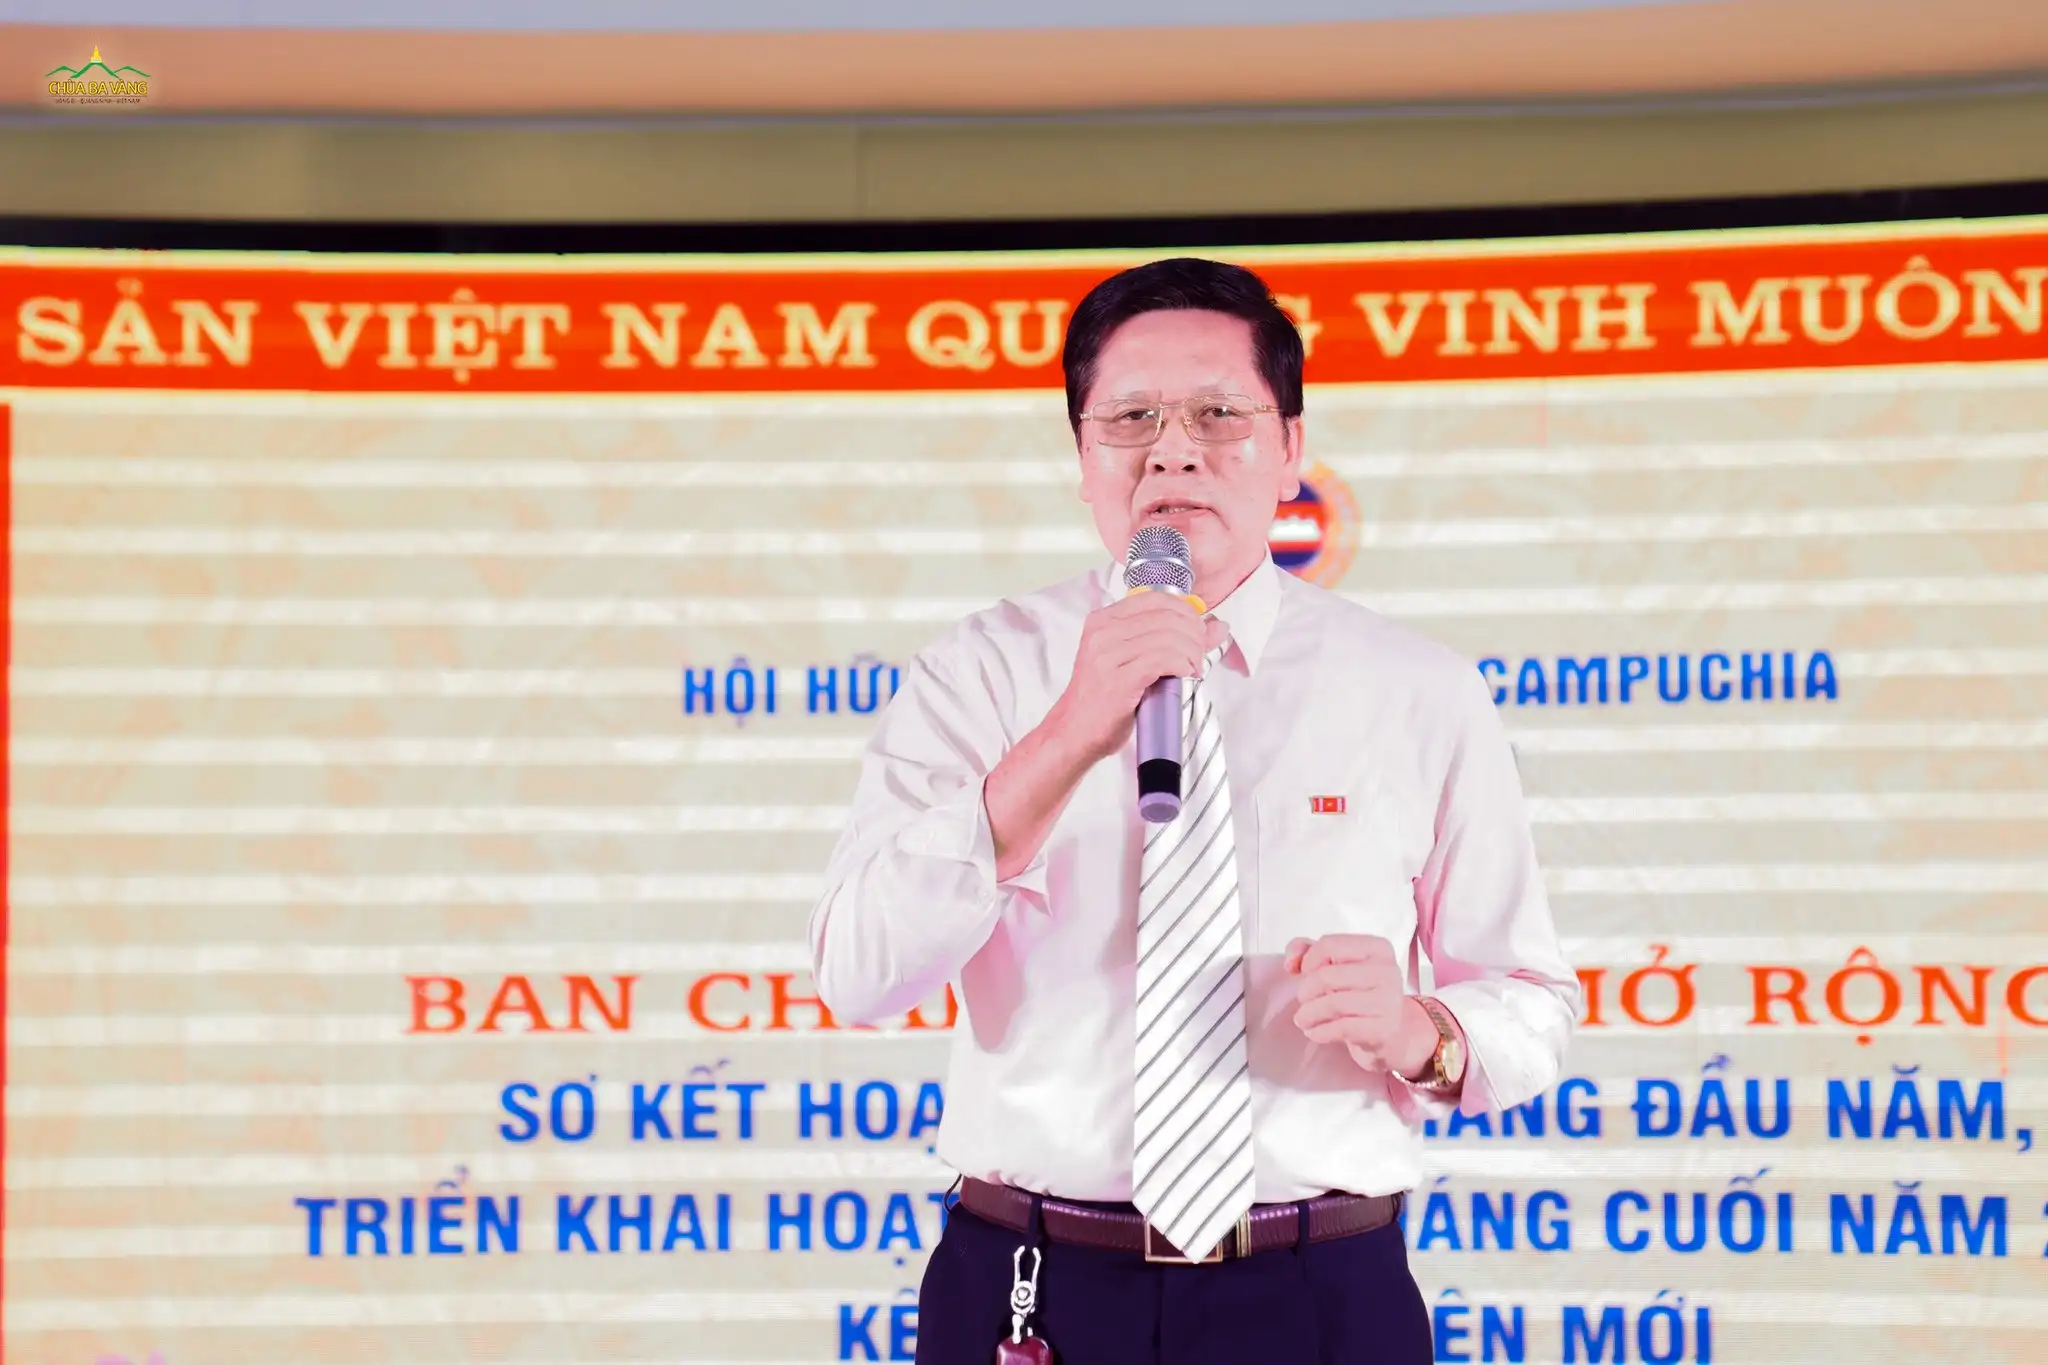 Ông Phạm Hồng Cẩm - Nguyên Phó trưởng ban Tuyên giáo Tỉnh ủy Quảng Ninh hát văn nghệ mừng Hội nghị